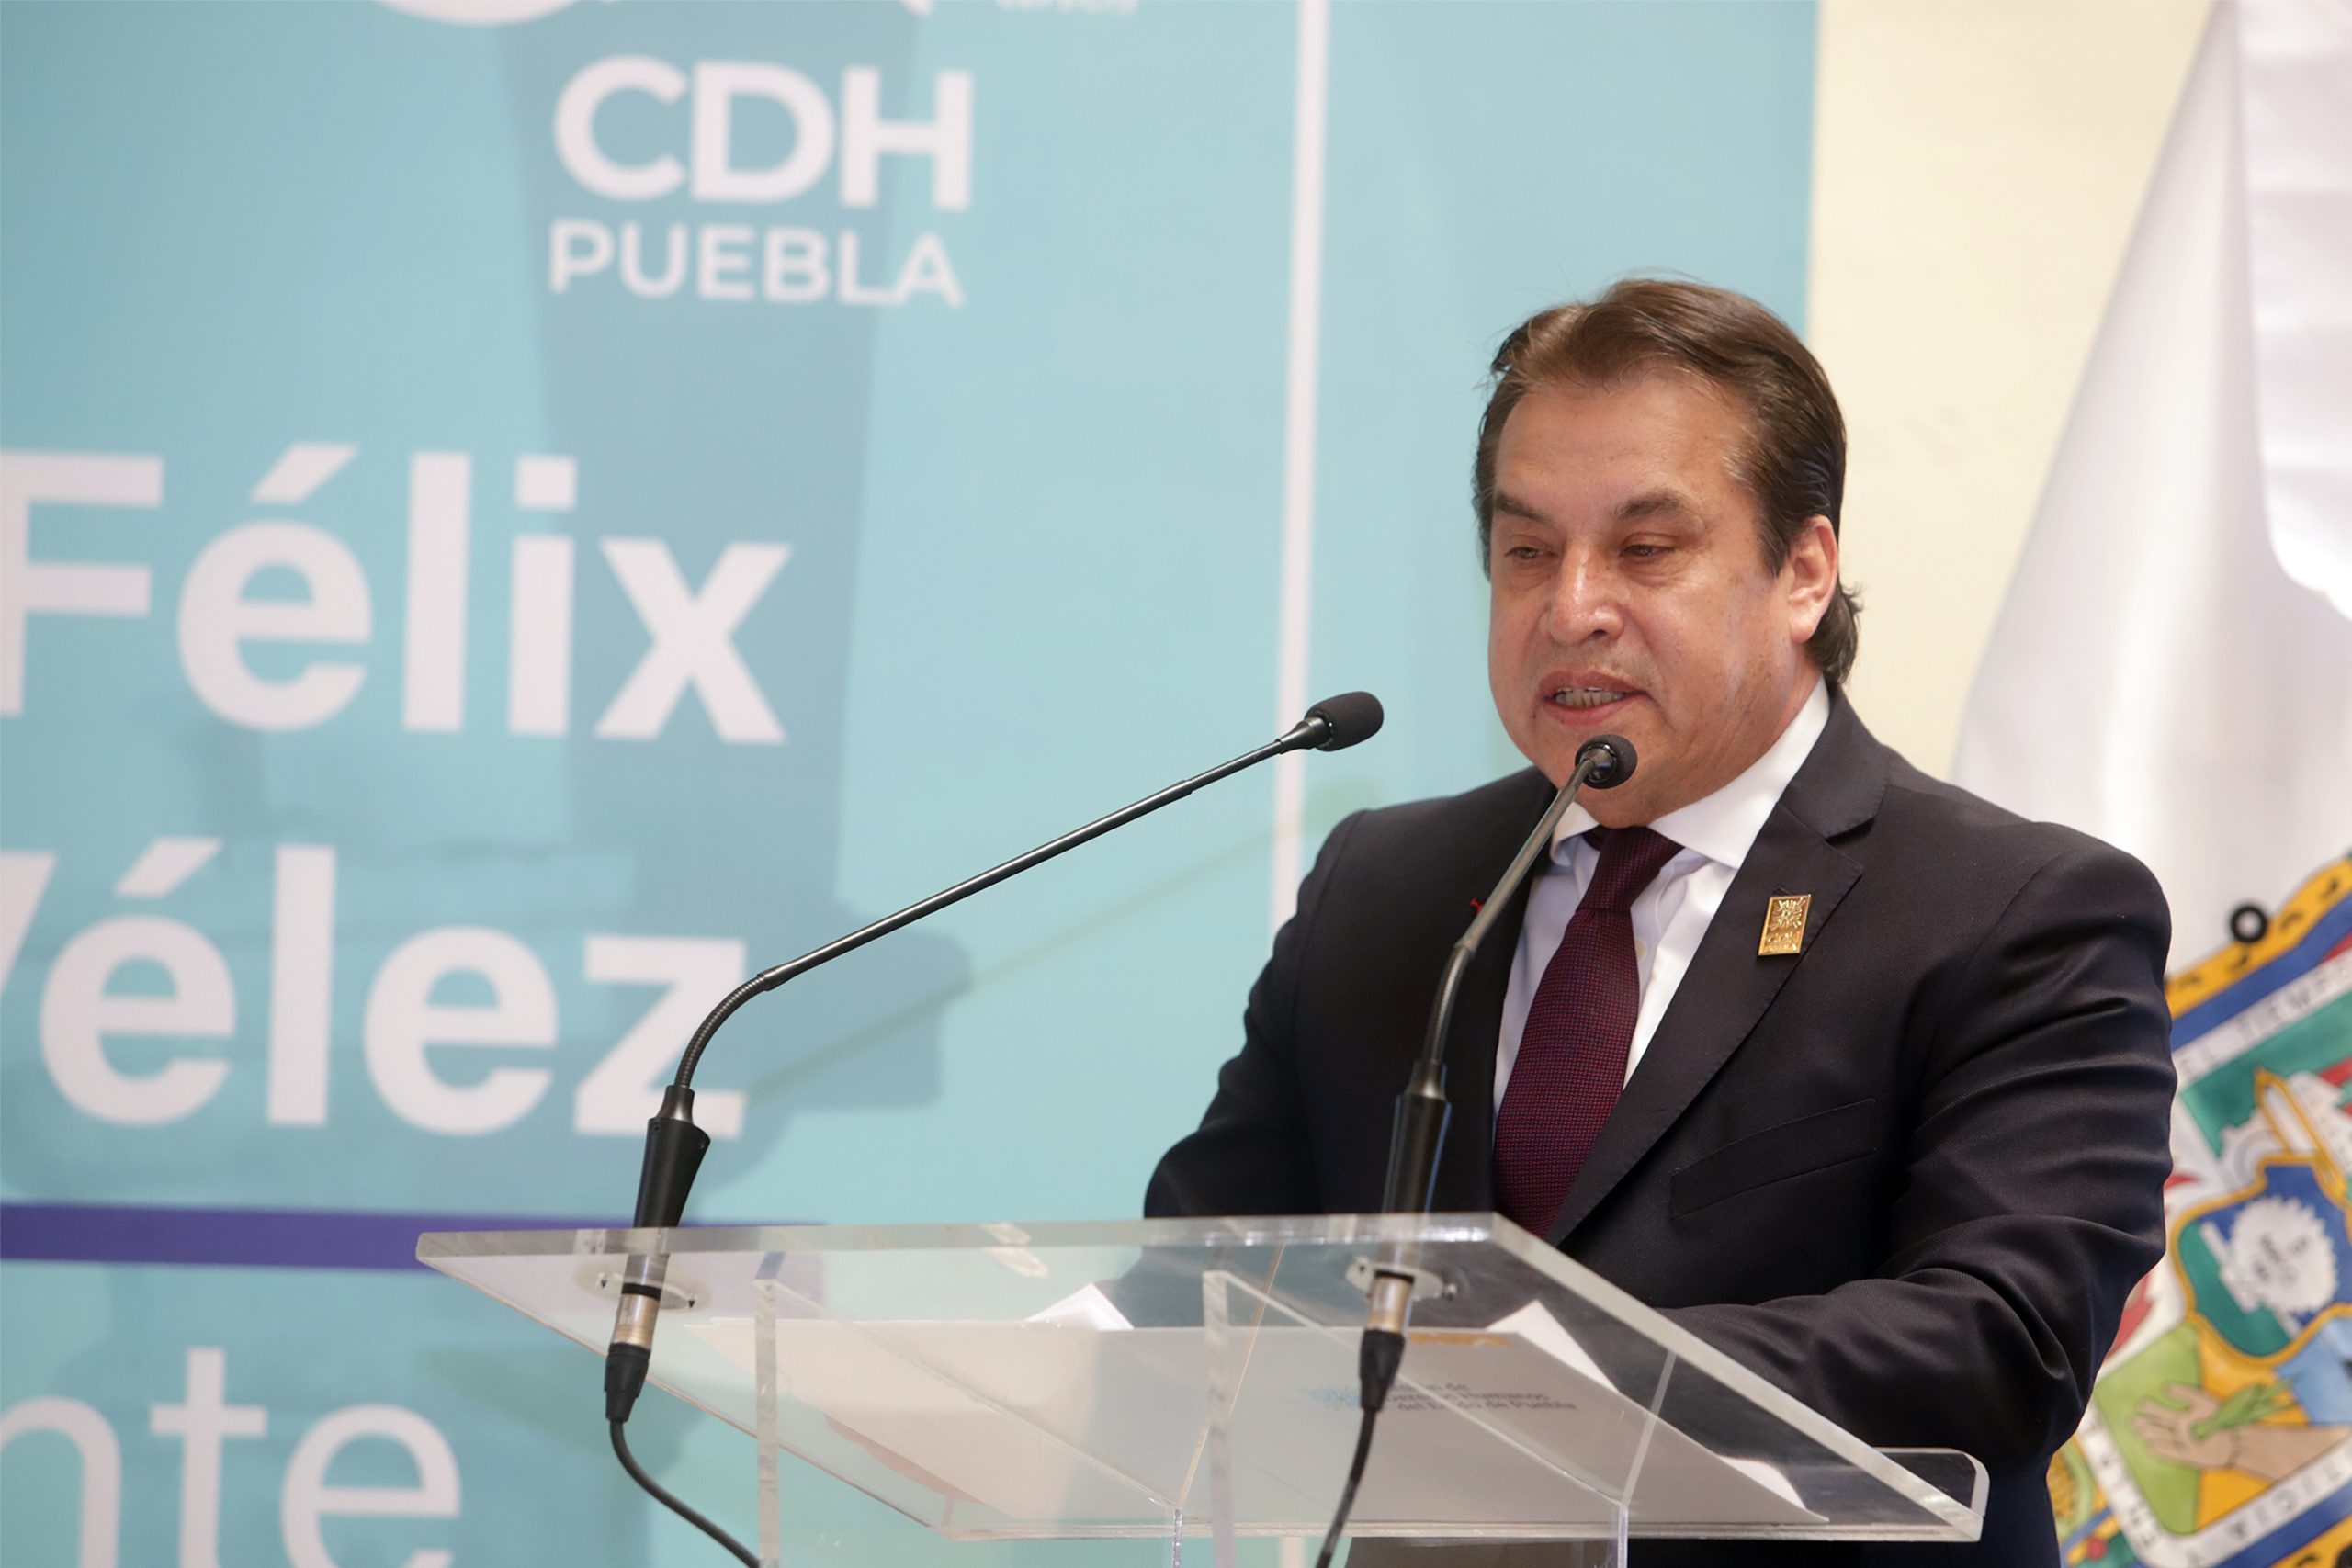 CDH Puebla intervendrá tras violación a joven por policías municipales